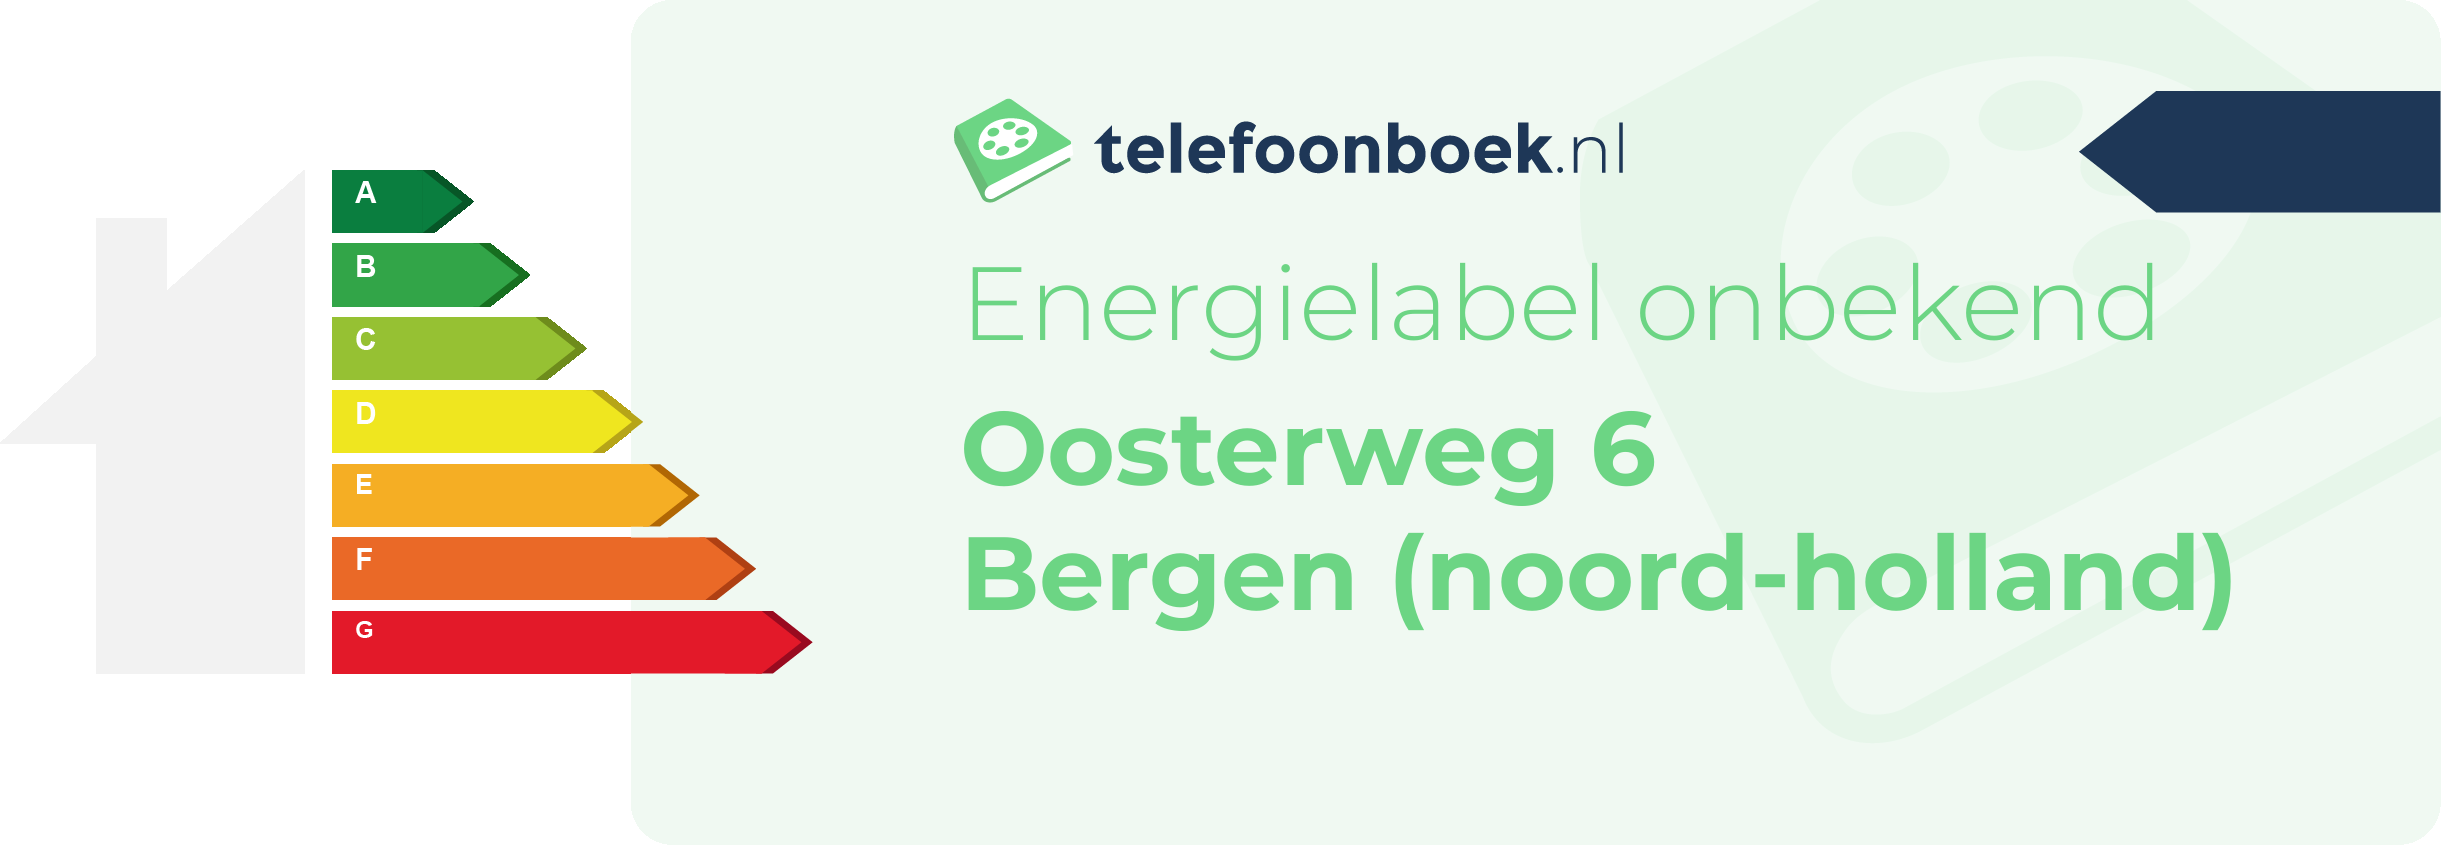 Energielabel Oosterweg 6 Bergen (Noord-Holland)